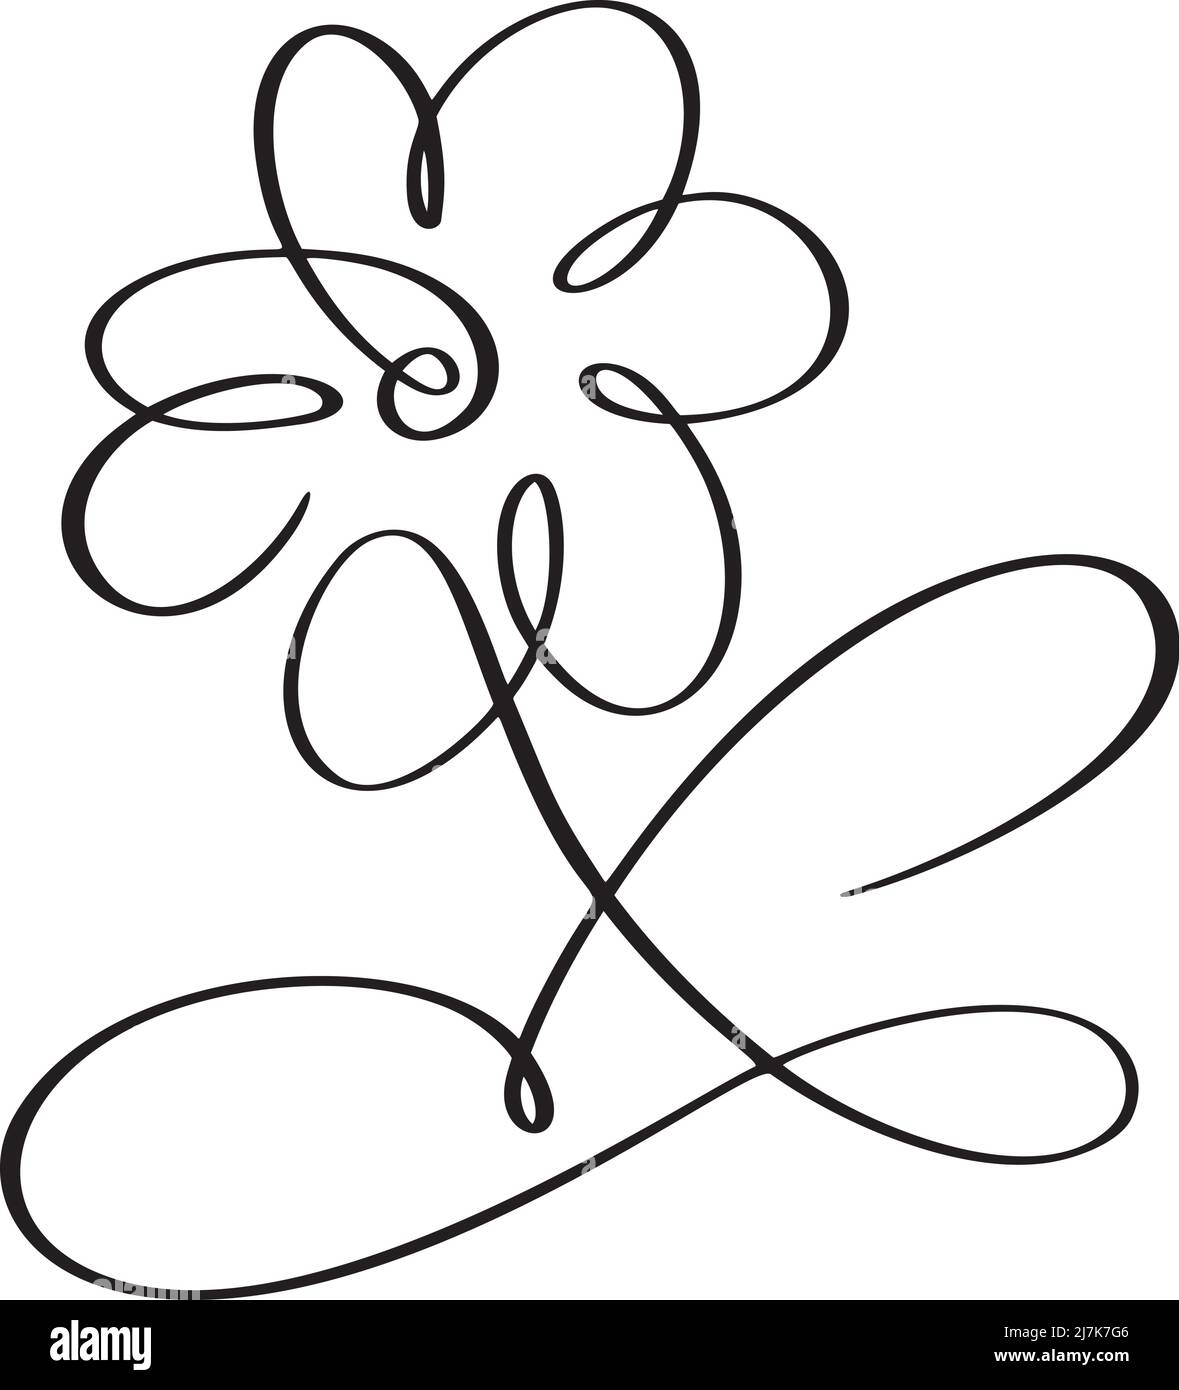 Dibujo de una línea de arte vectorial dibujado a mano de flor. Diseño floral contemporáneo minimalista y moderno perfecto para Wall Art, impresiones, medios sociales y pósters Ilustración del Vector